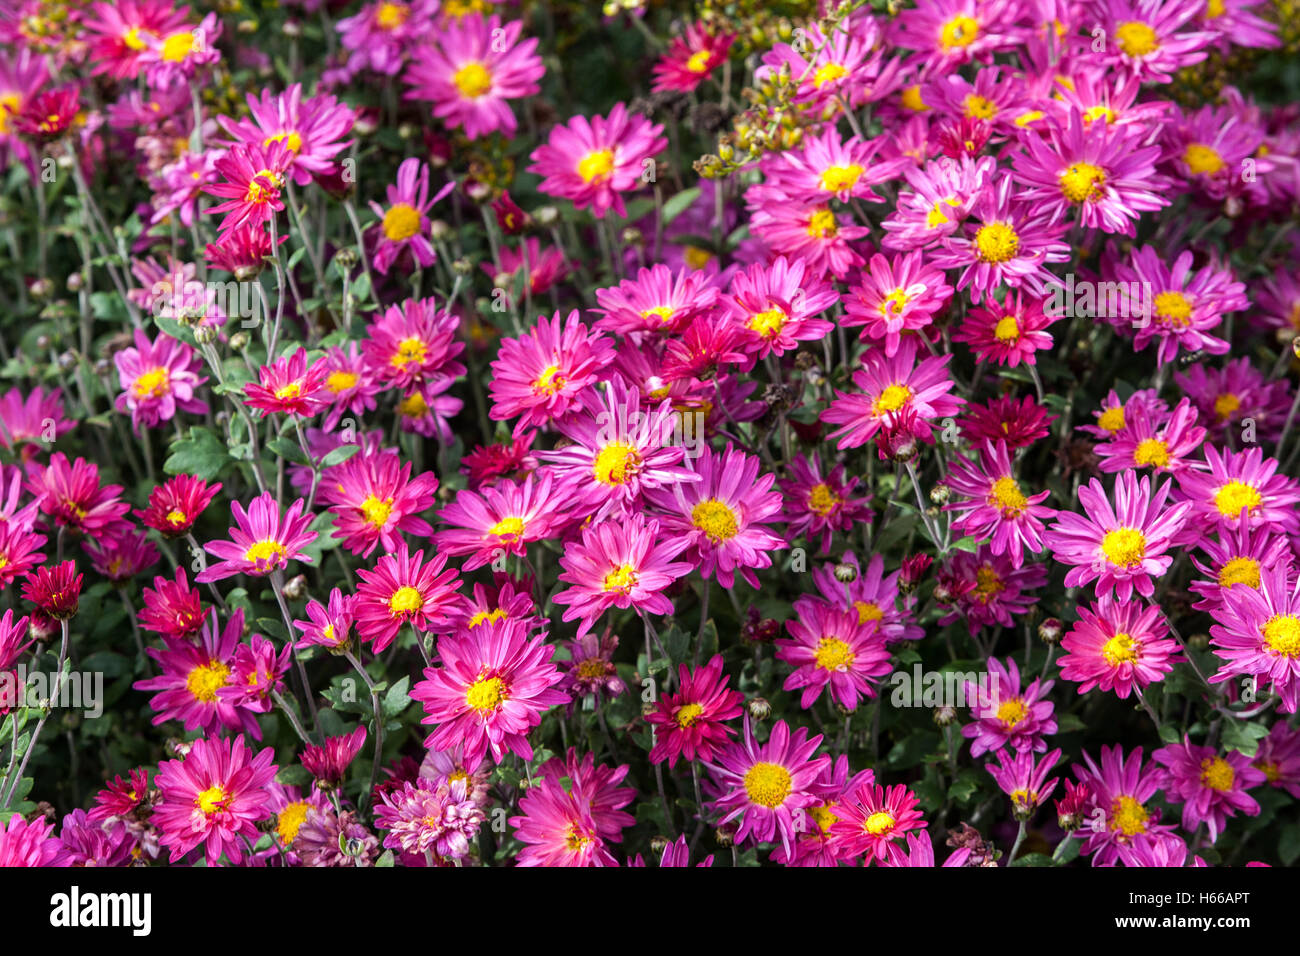 Púrpura Chrysanthemum herbstkuss, colores otoñales en el lecho de flores del jardín, flores de ropa de cama Foto de stock